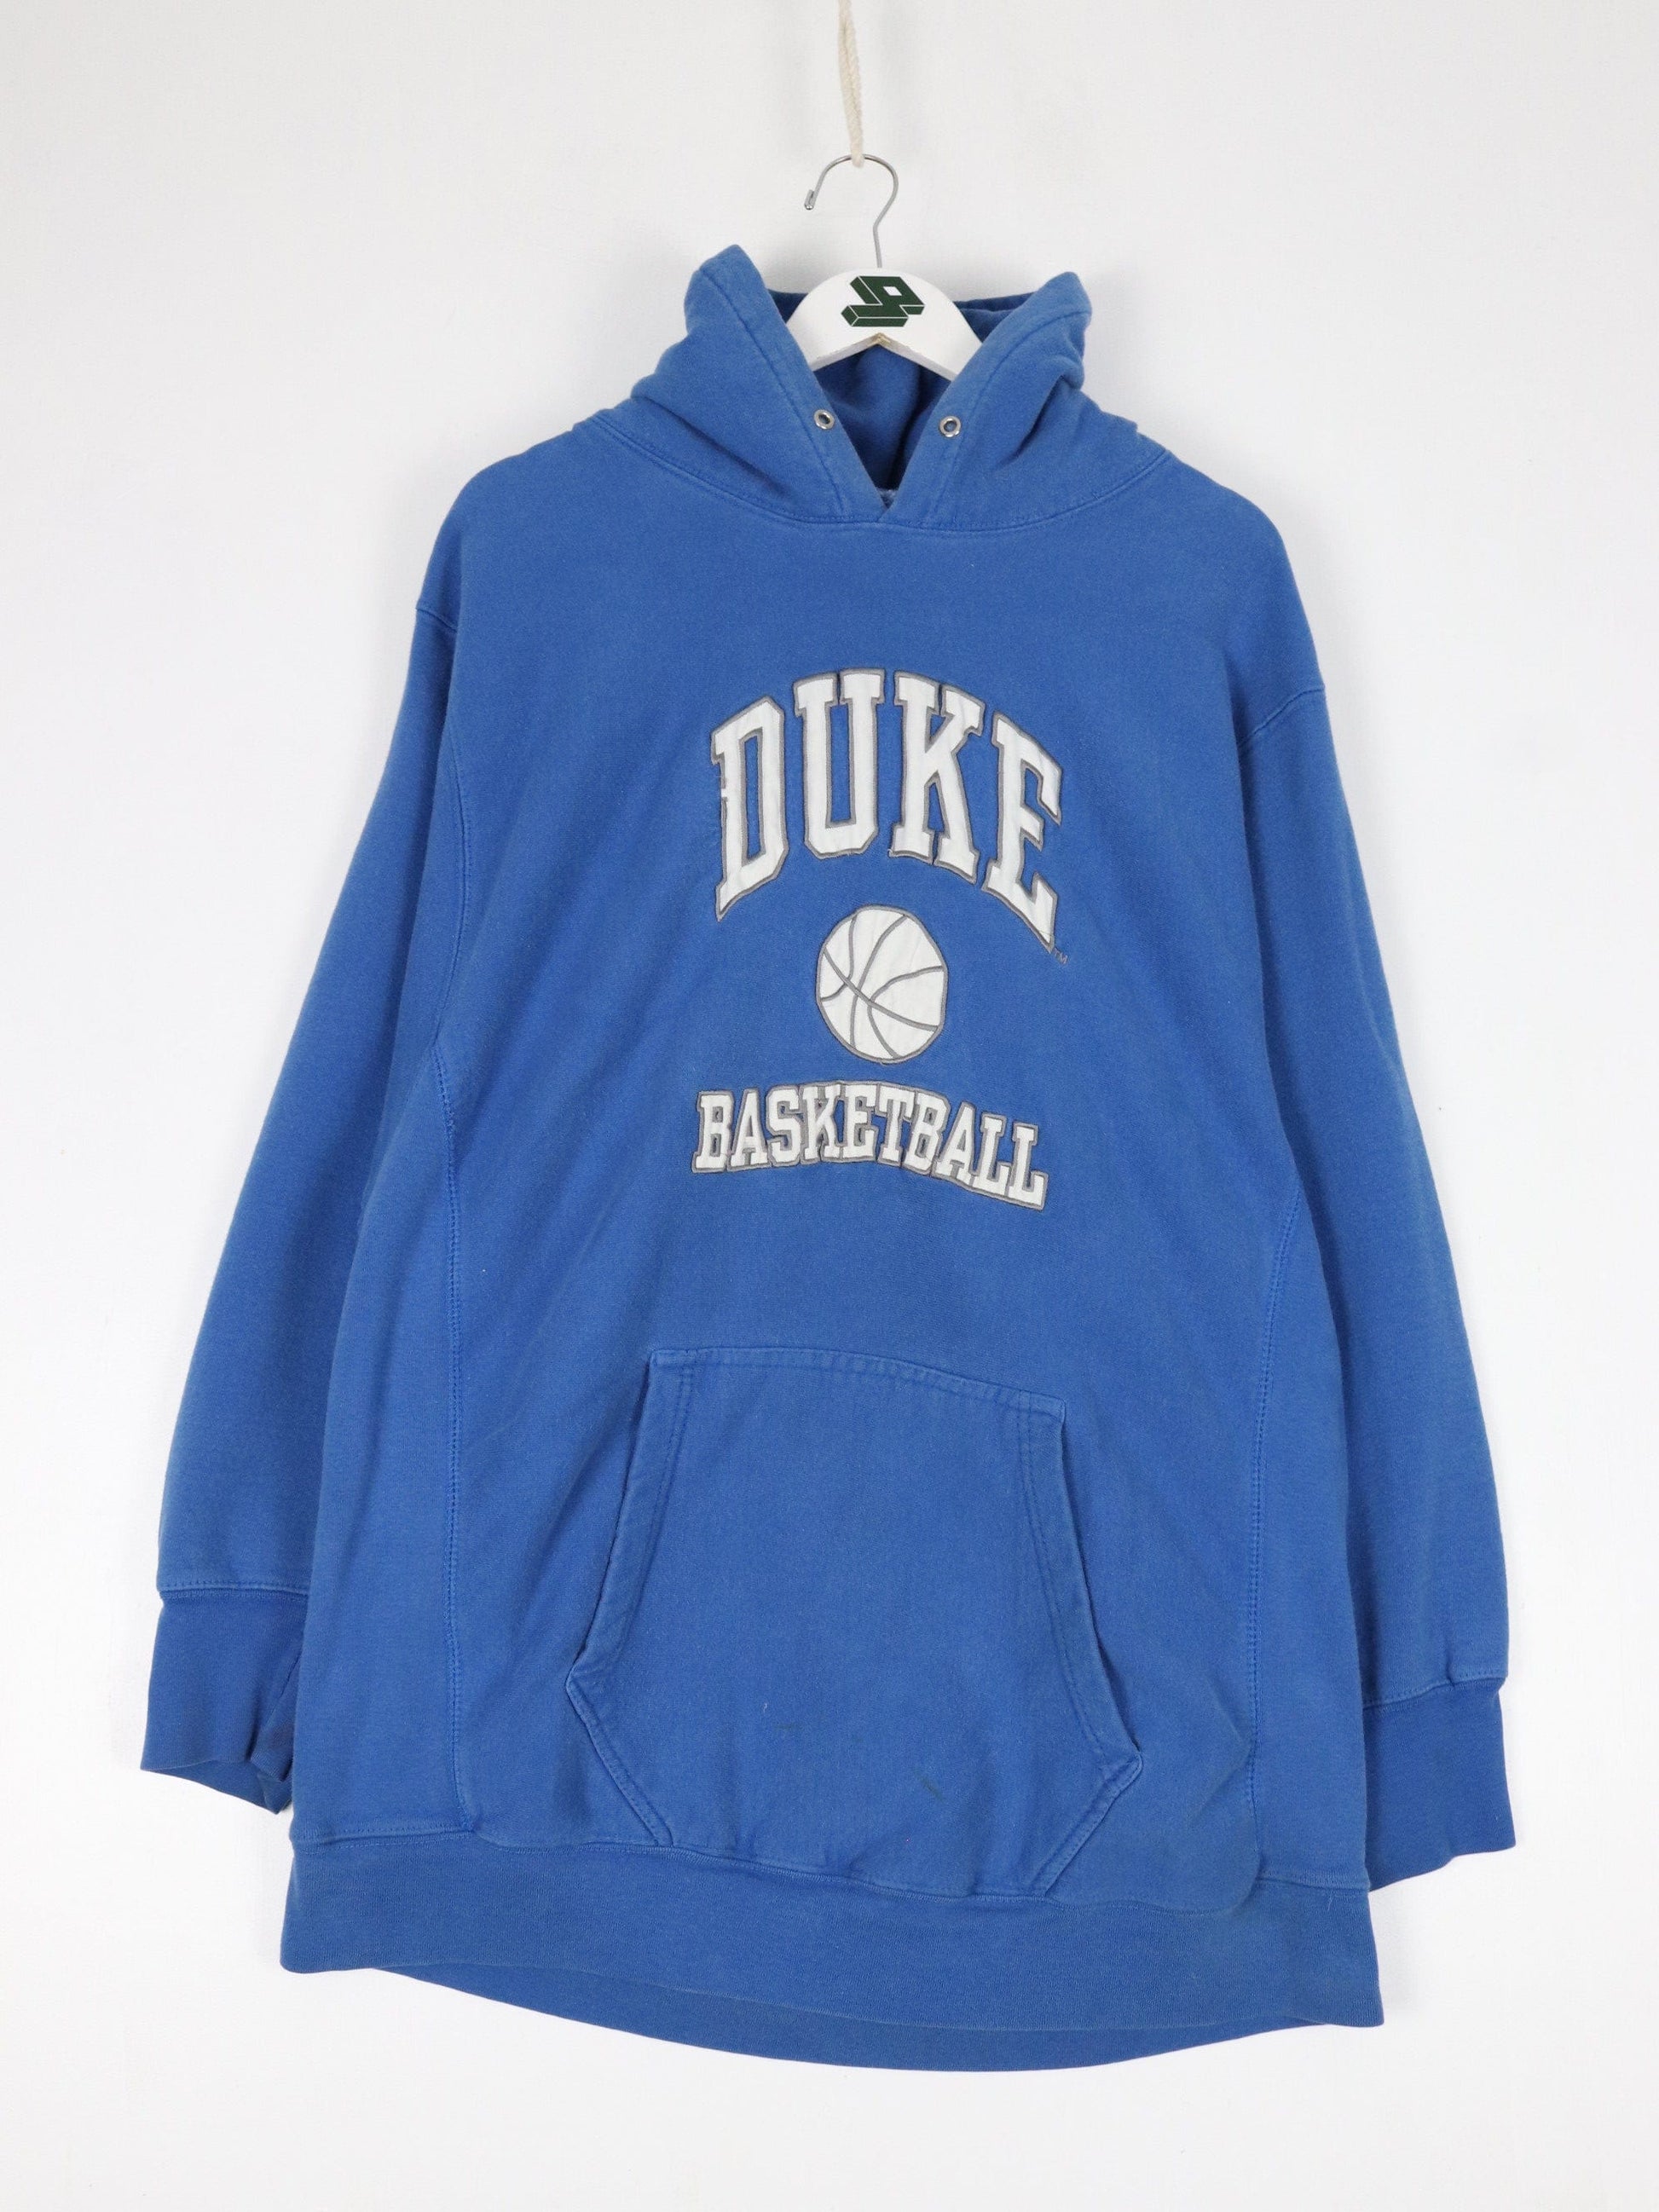 Collegiate Sweatshirts & Hoodies Vintage Duke Blue Devils Sweatshirt Mens XL Blue College Basketball Hoodie